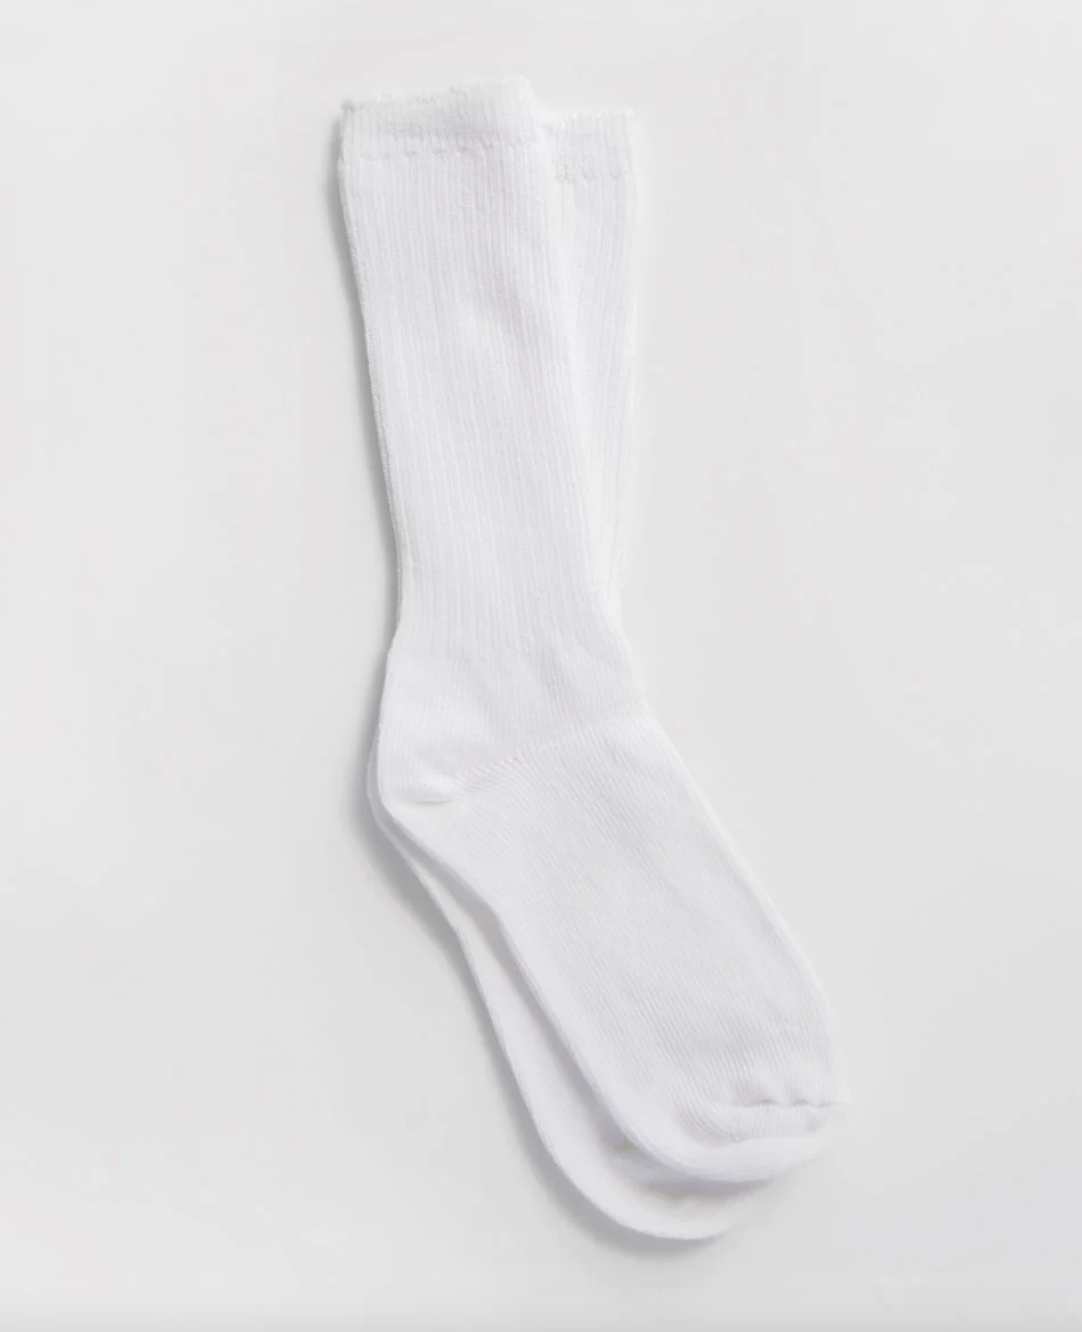 Cotton Socks by Okayok – Luna Collective